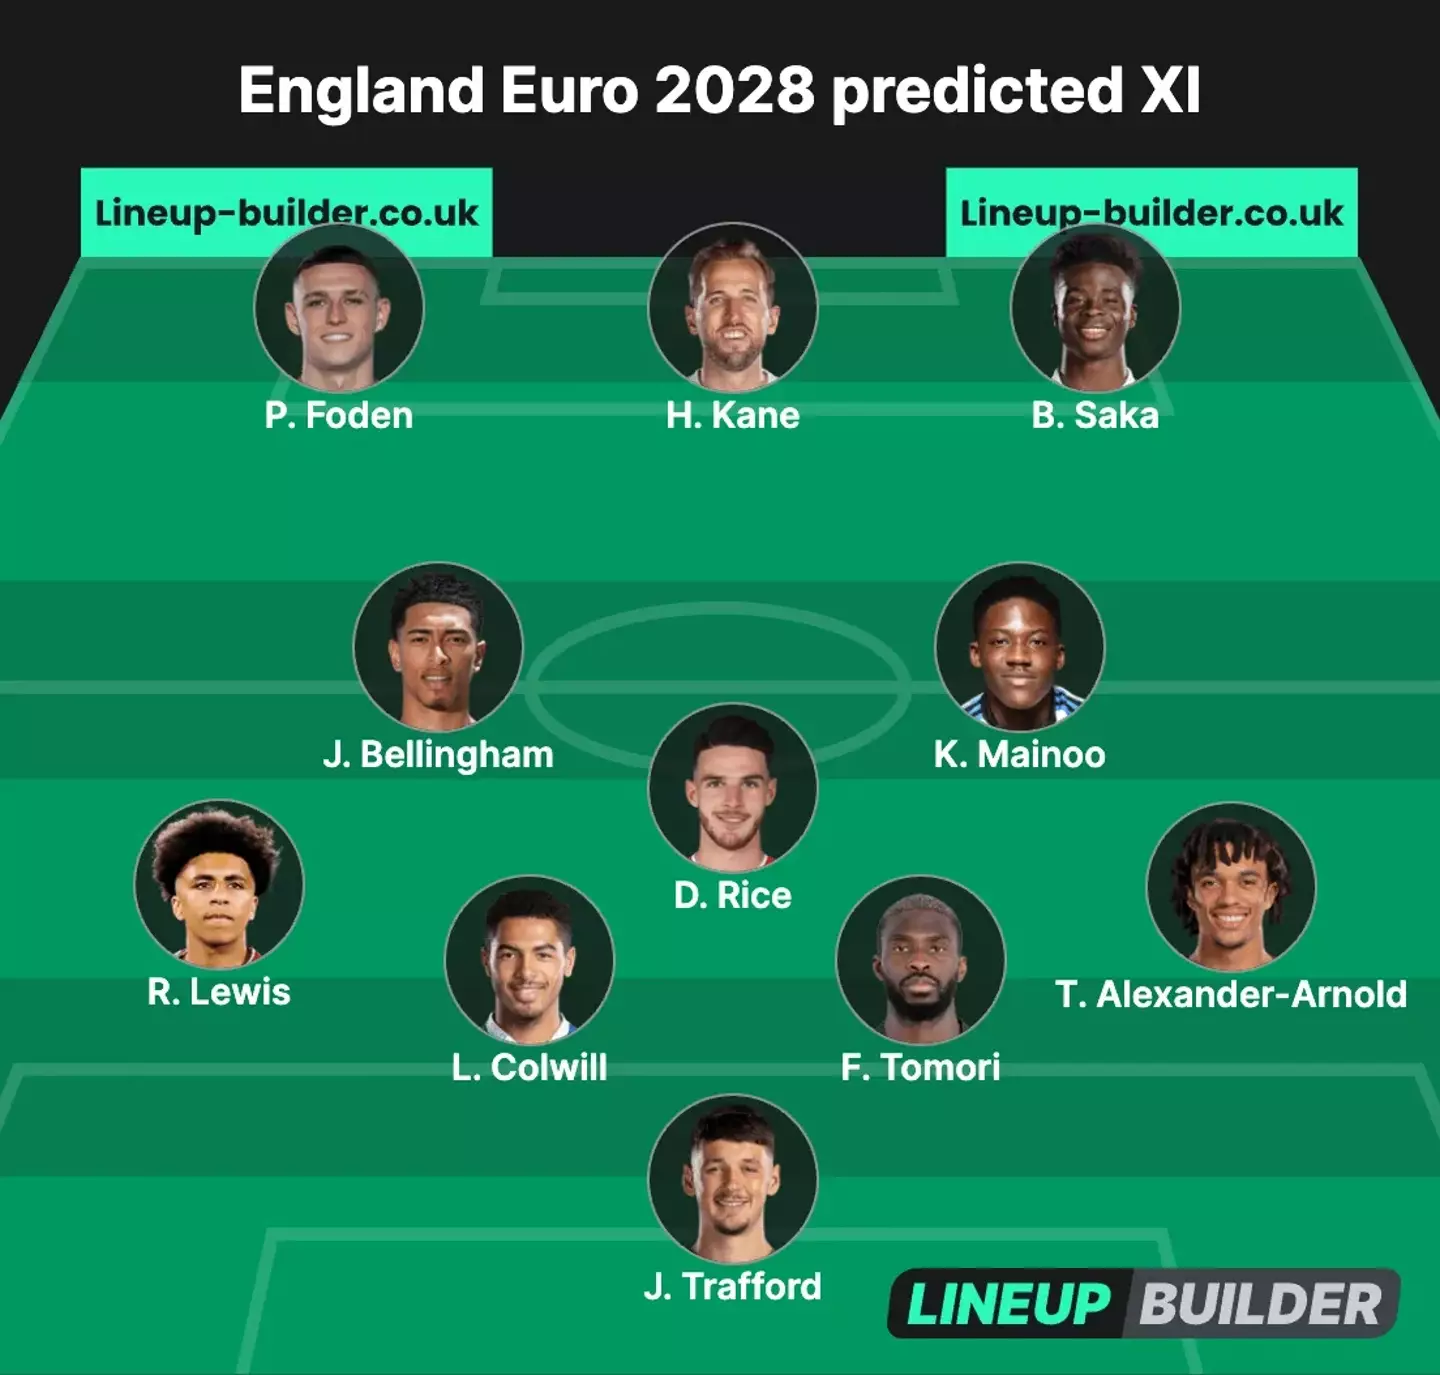 Our England Euro 2028 XI prediction (